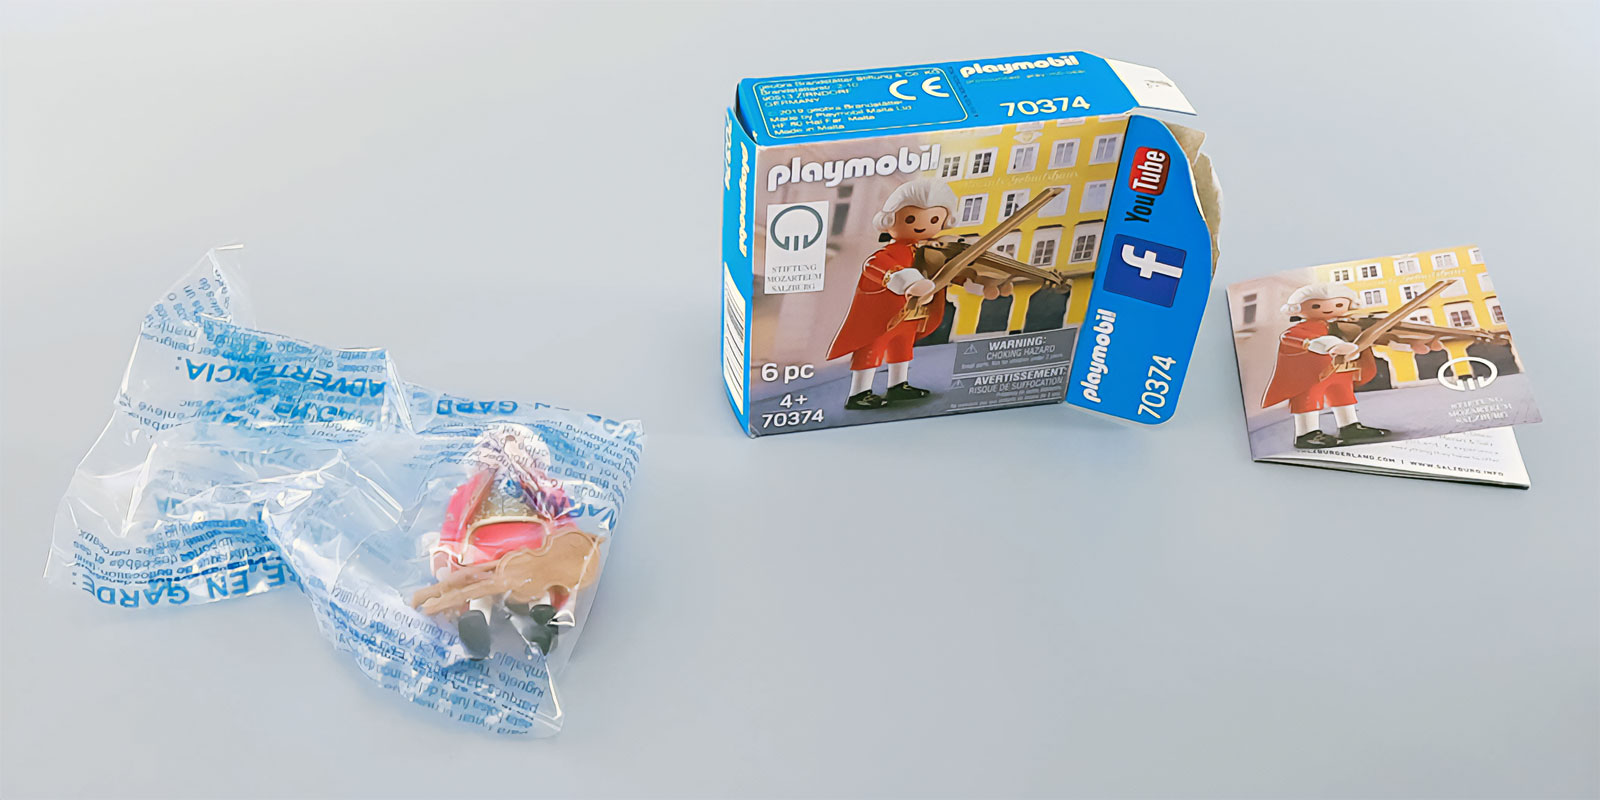 Playmobil Sonderfigur von Wolfgang Amadeus Mozart